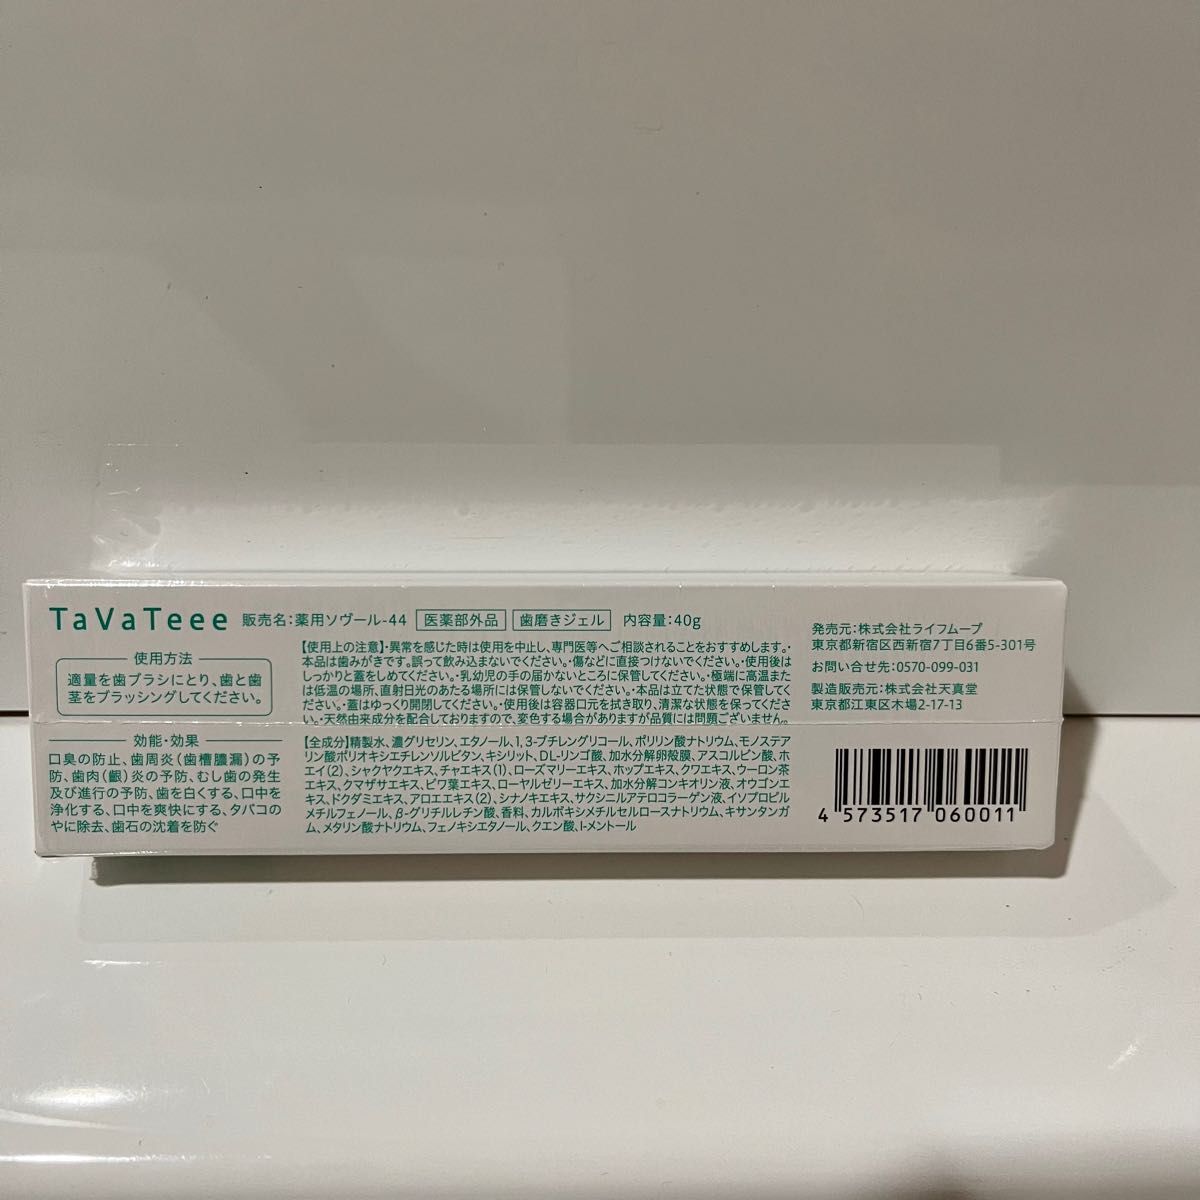 タバティー TaVateee 薬用ホワイトニングジェル 40g歯磨き粉タイプ